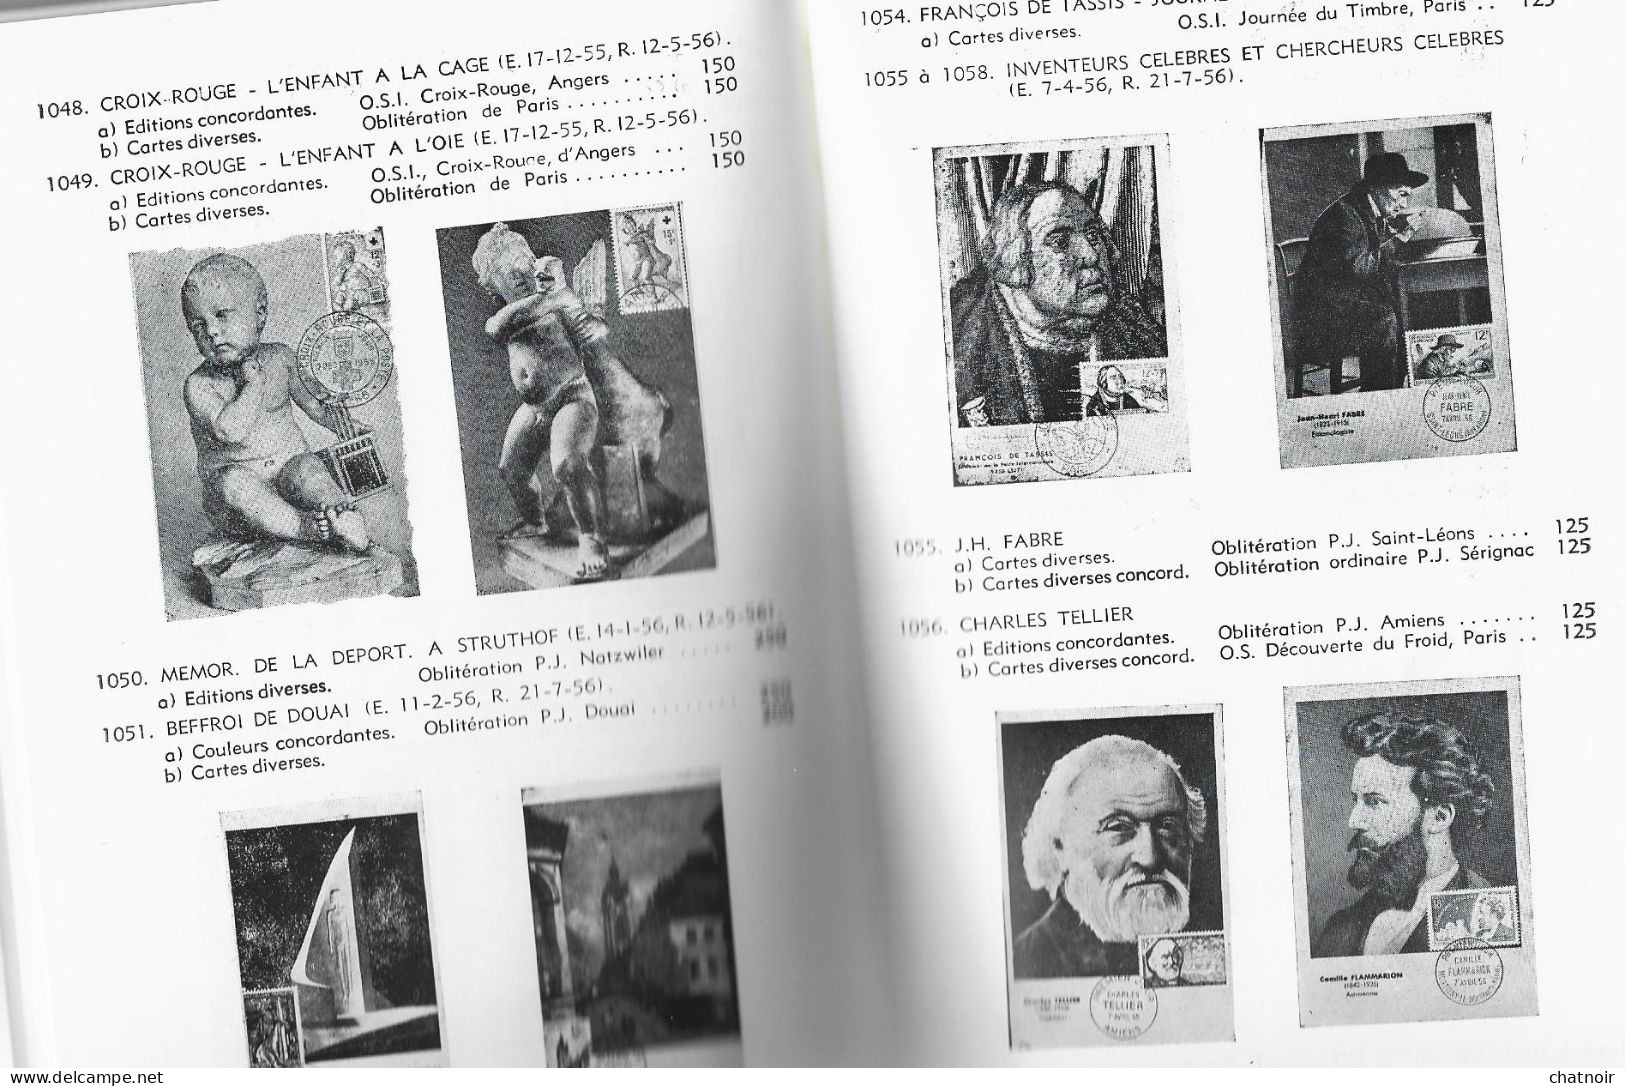 Catalogue  De Cartes Maximum  De France  1959   106 Pages - Catalogues For Auction Houses